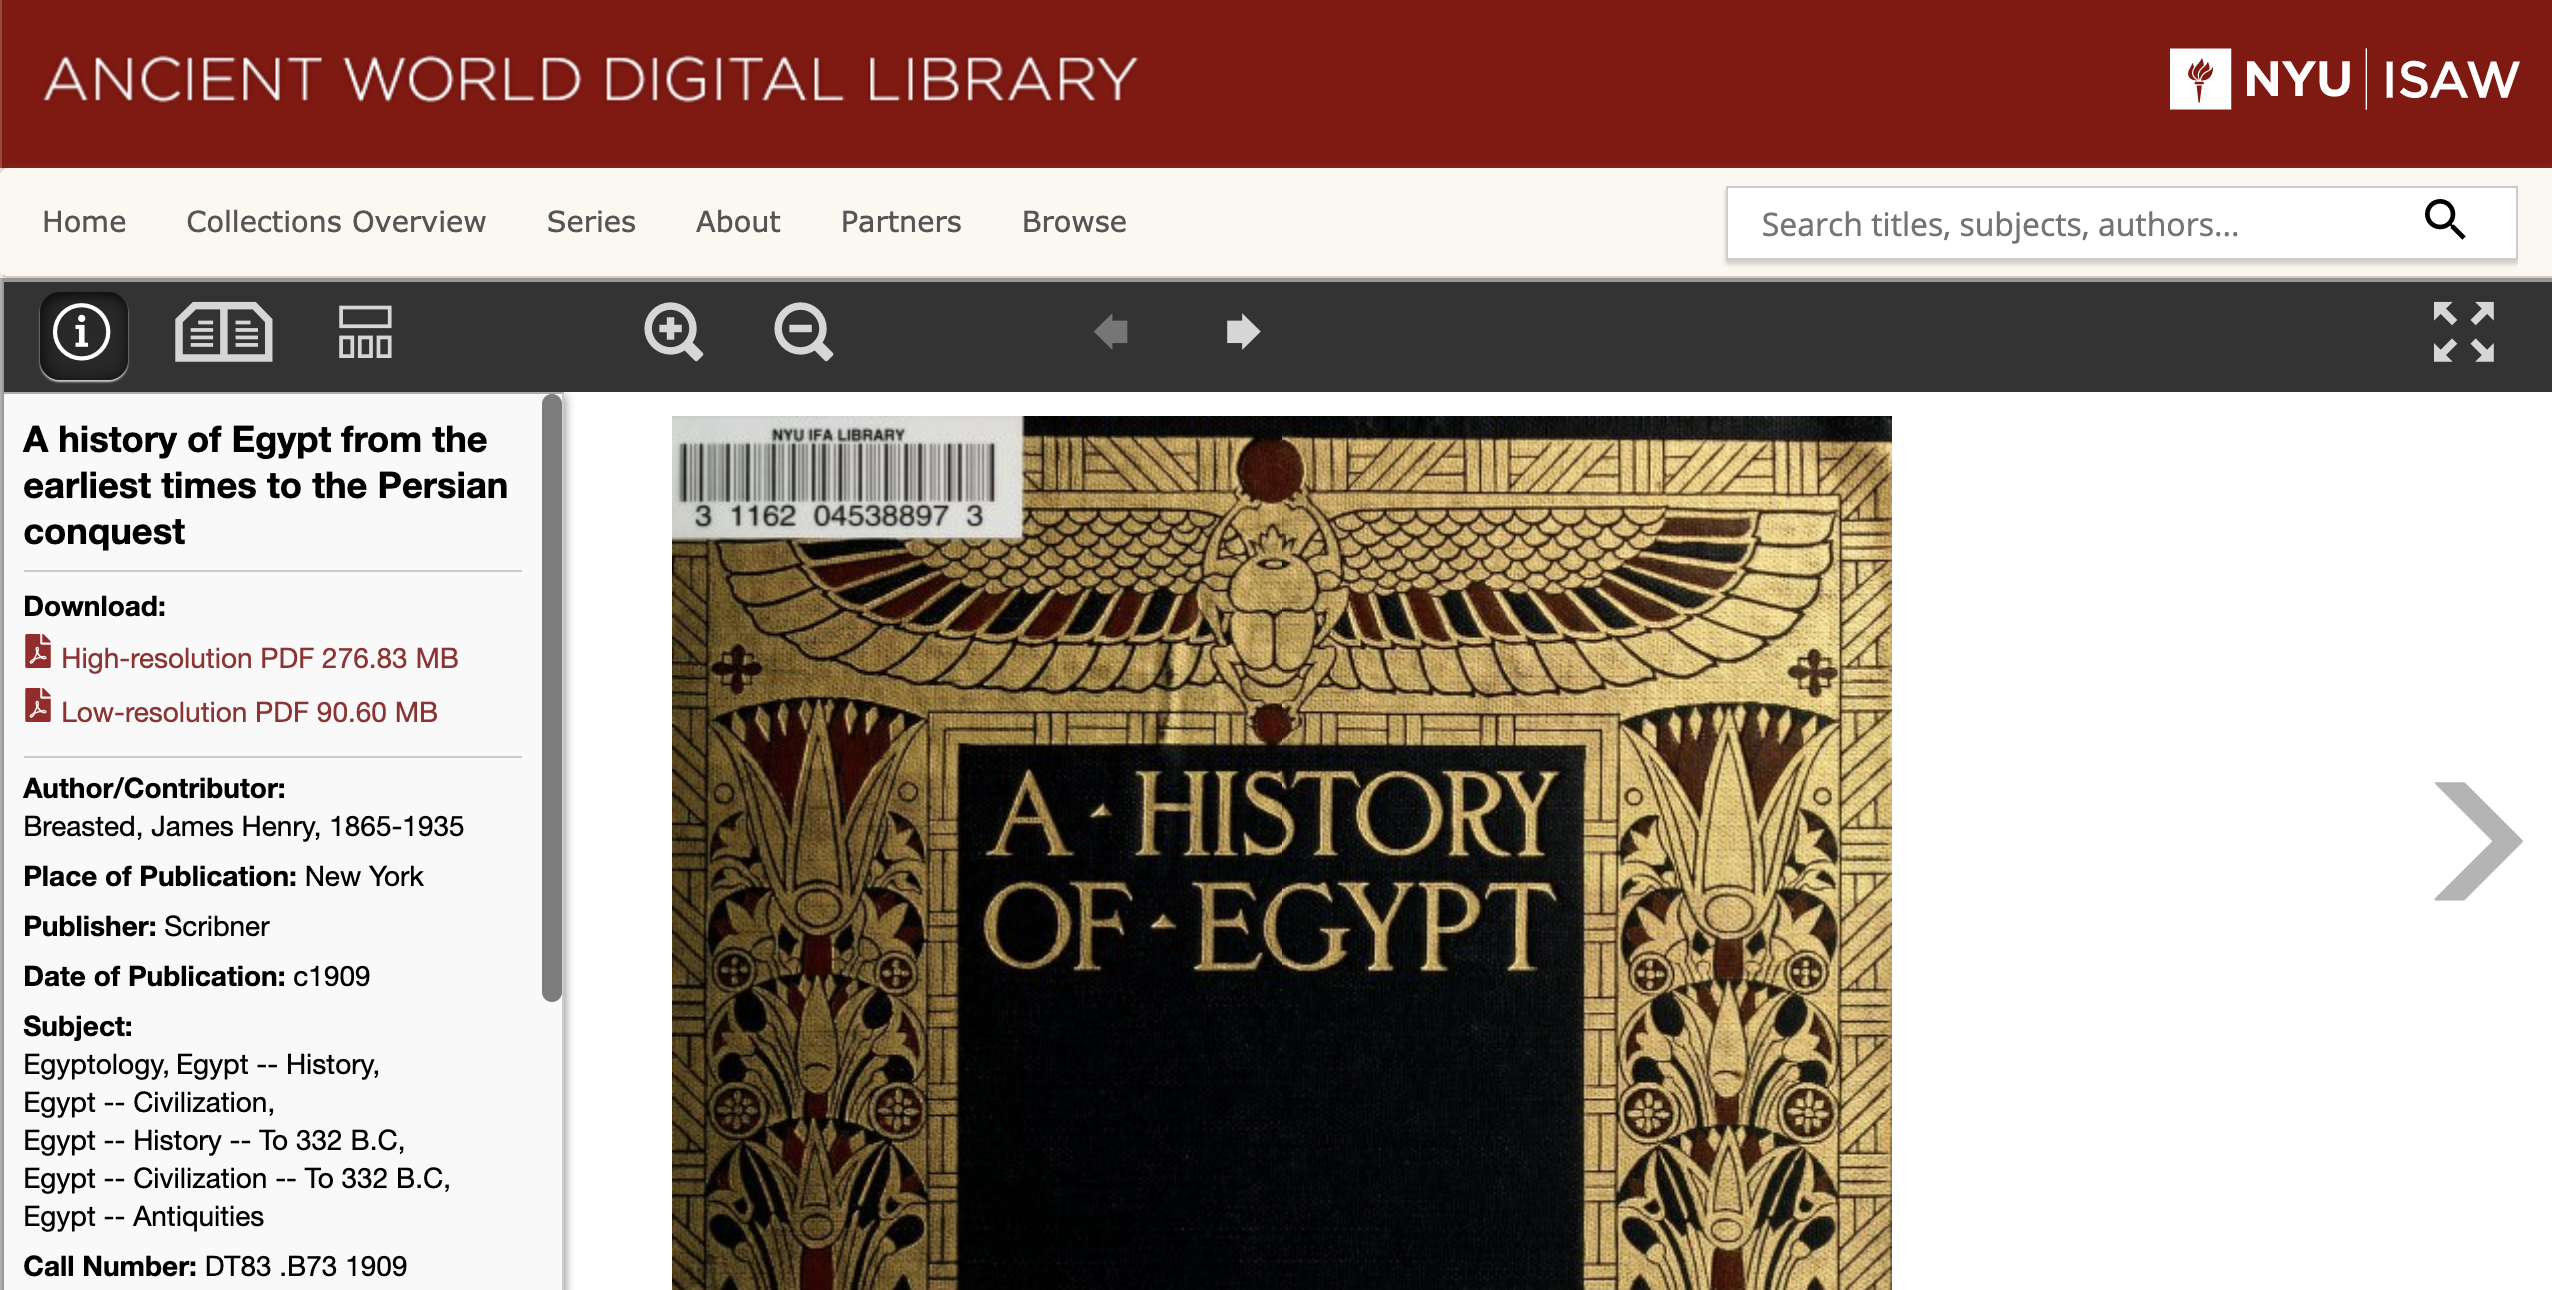 AWDL republishes Egyptology collection